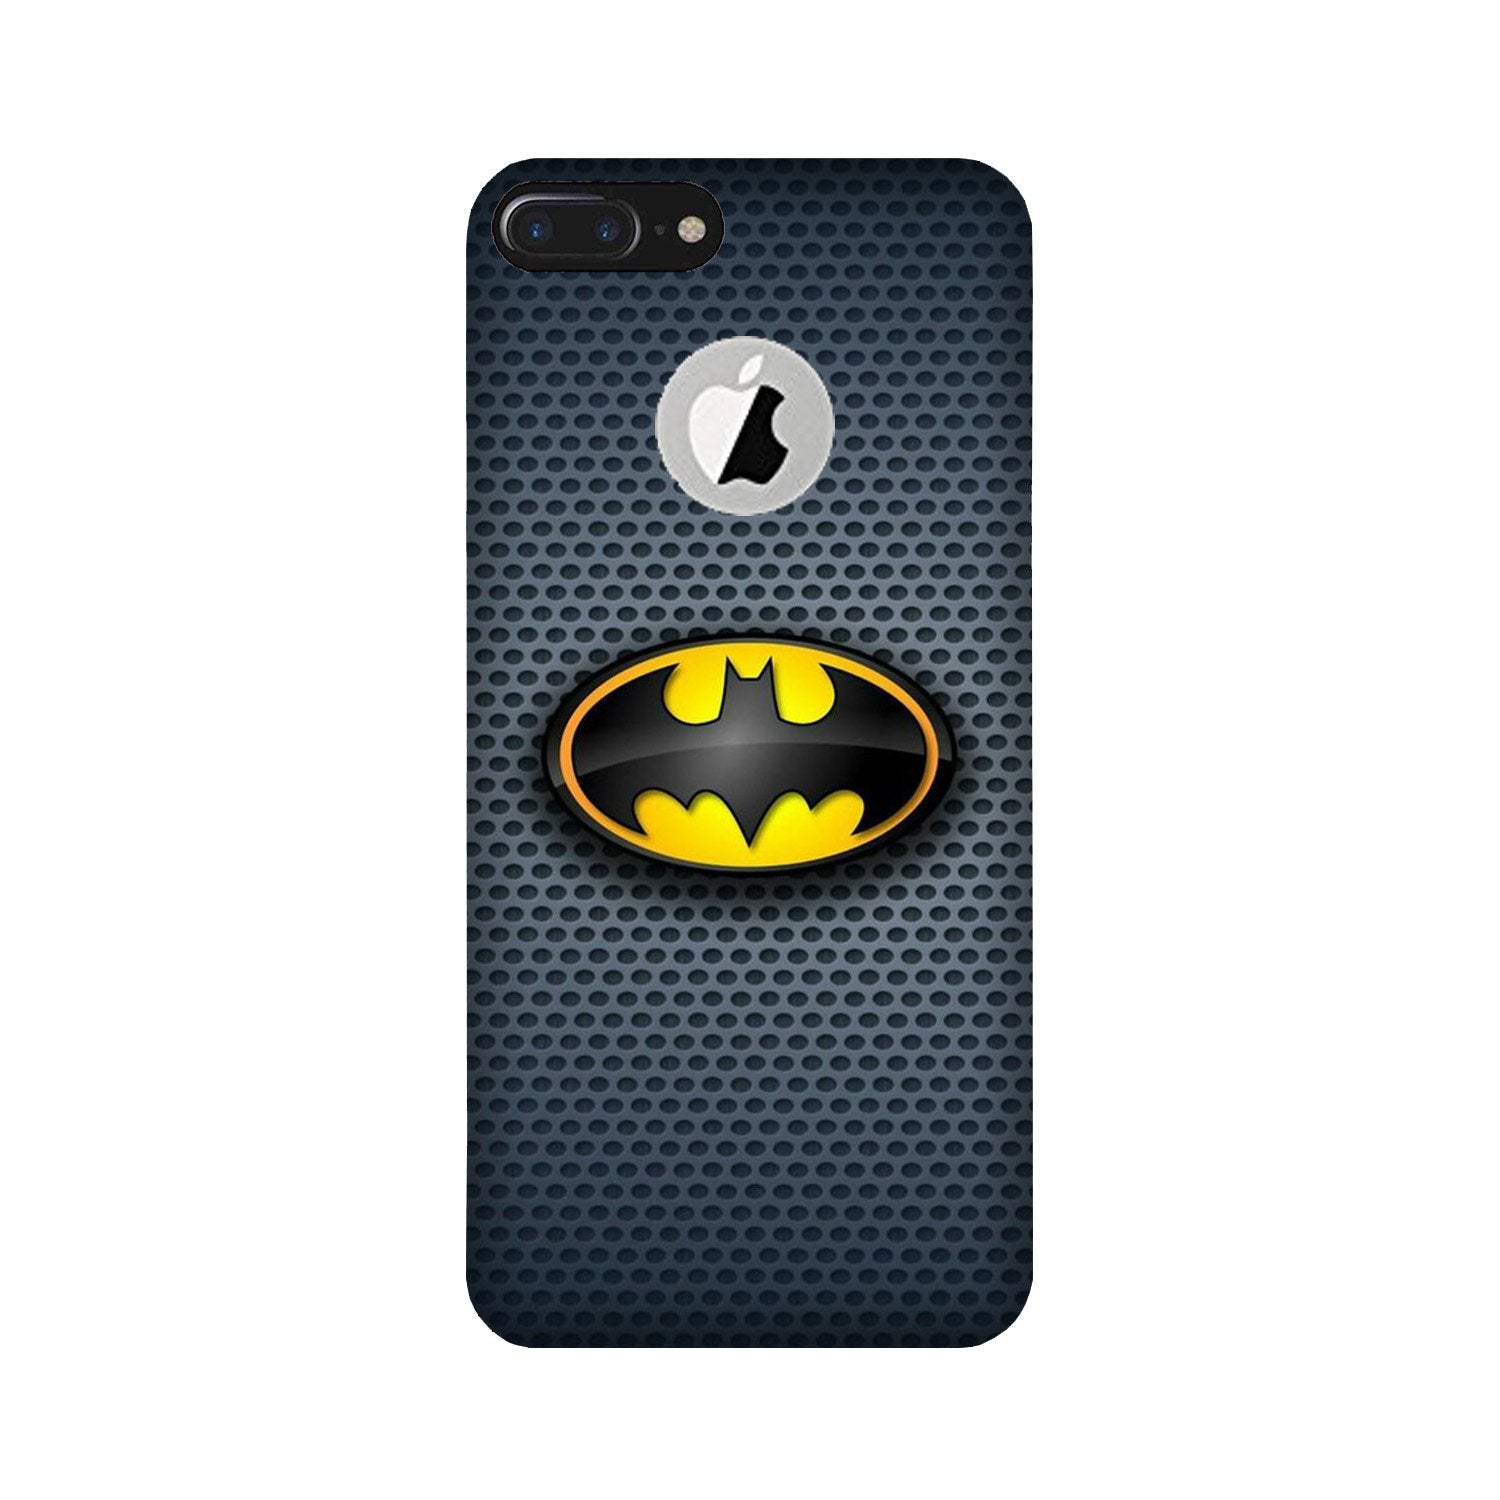 Batman Case for iPhone 7 Plus logo cut (Design No. 244)